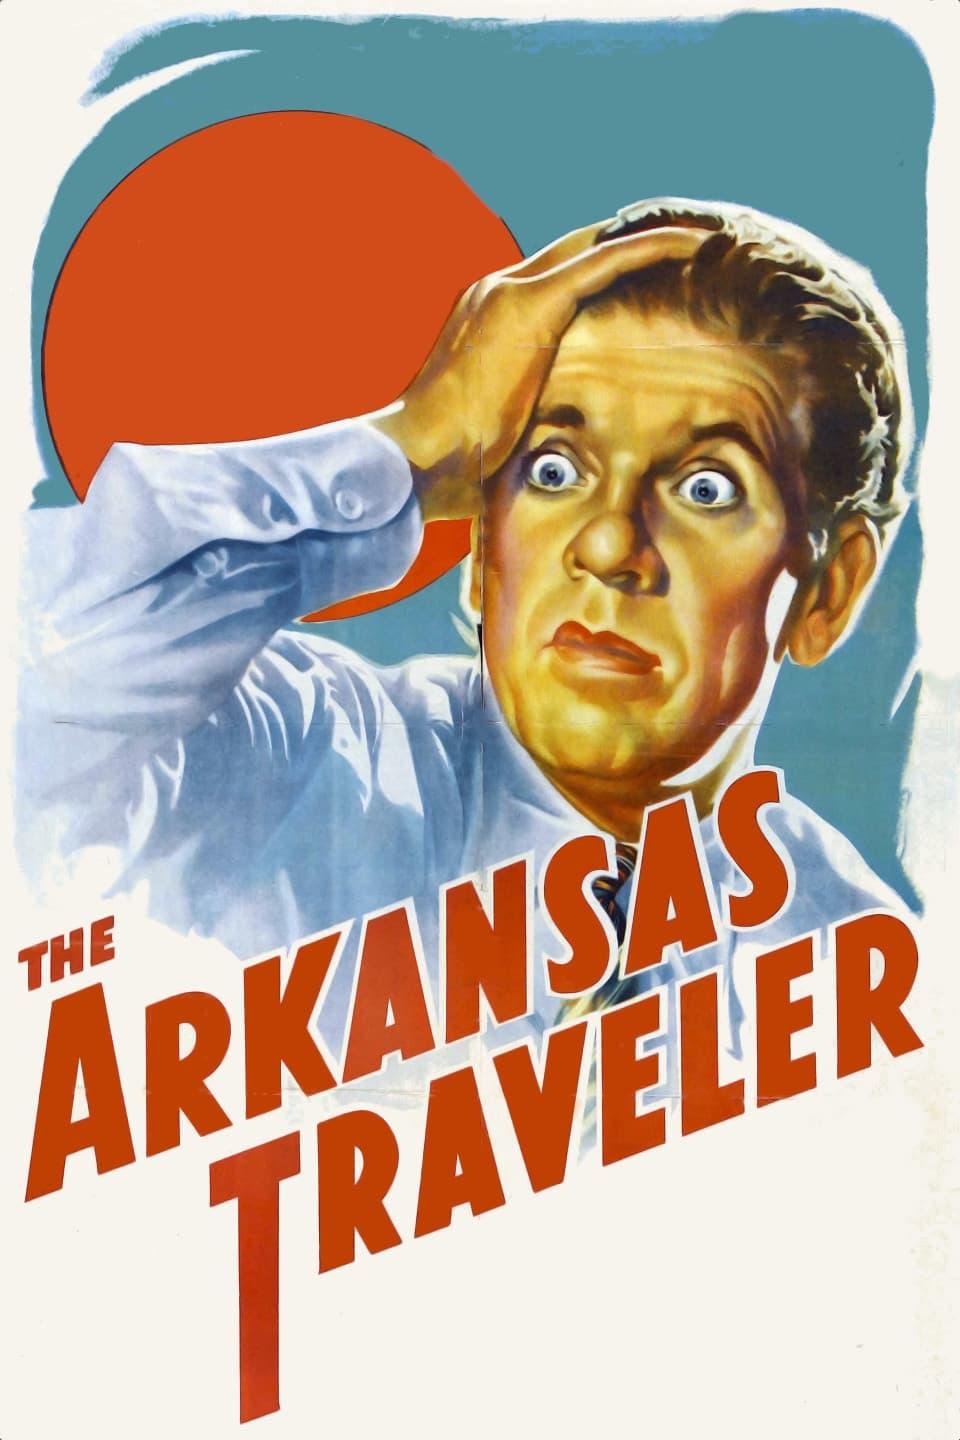 The Arkansas Traveler poster